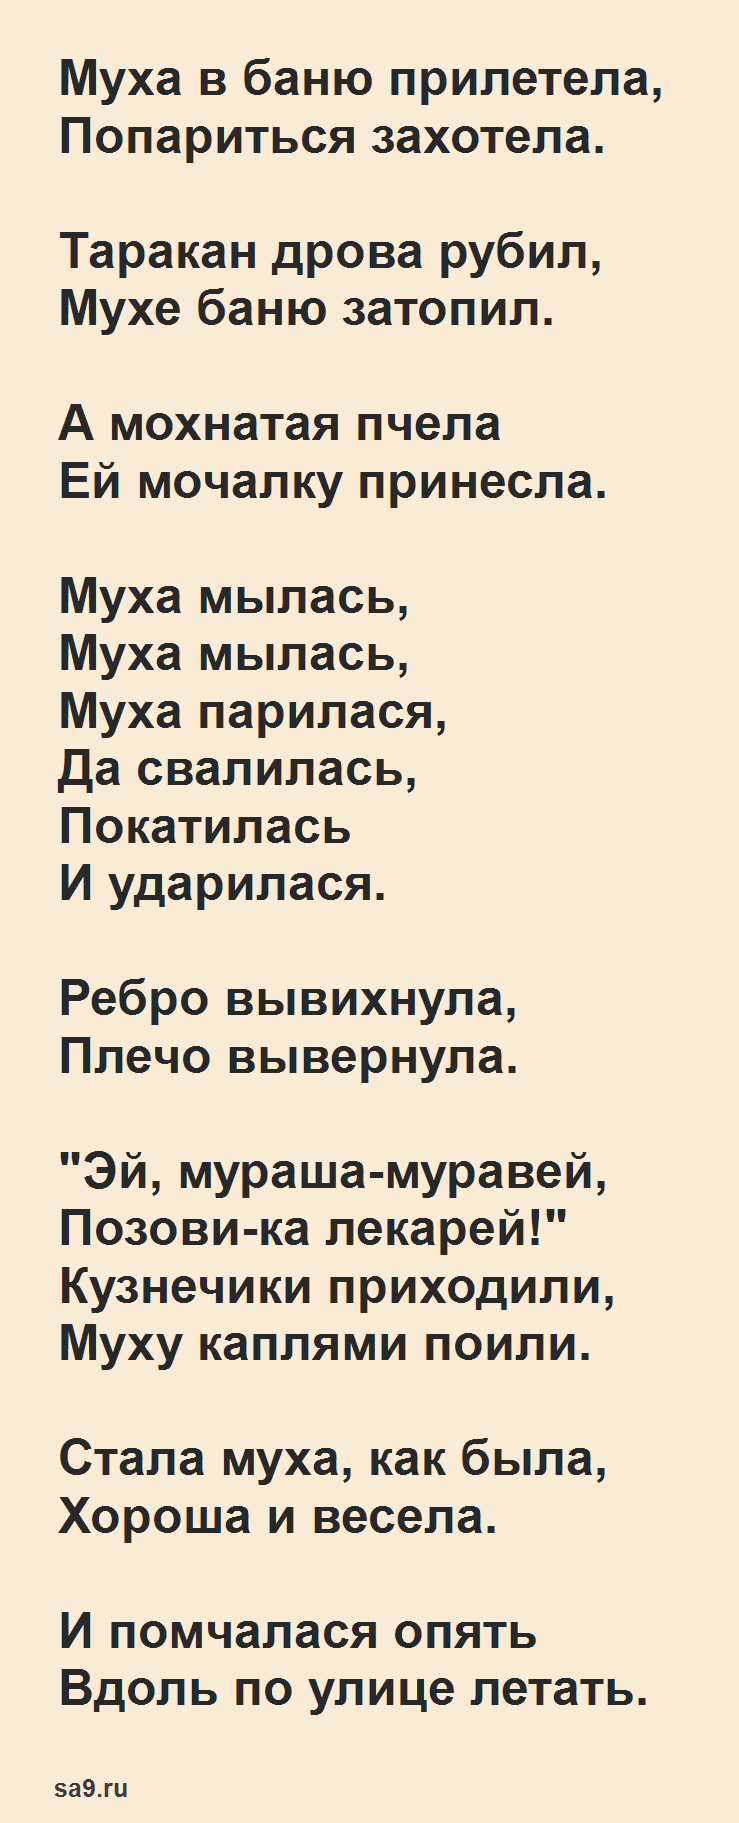 Стихи Чуковского для детей - Муха в бане